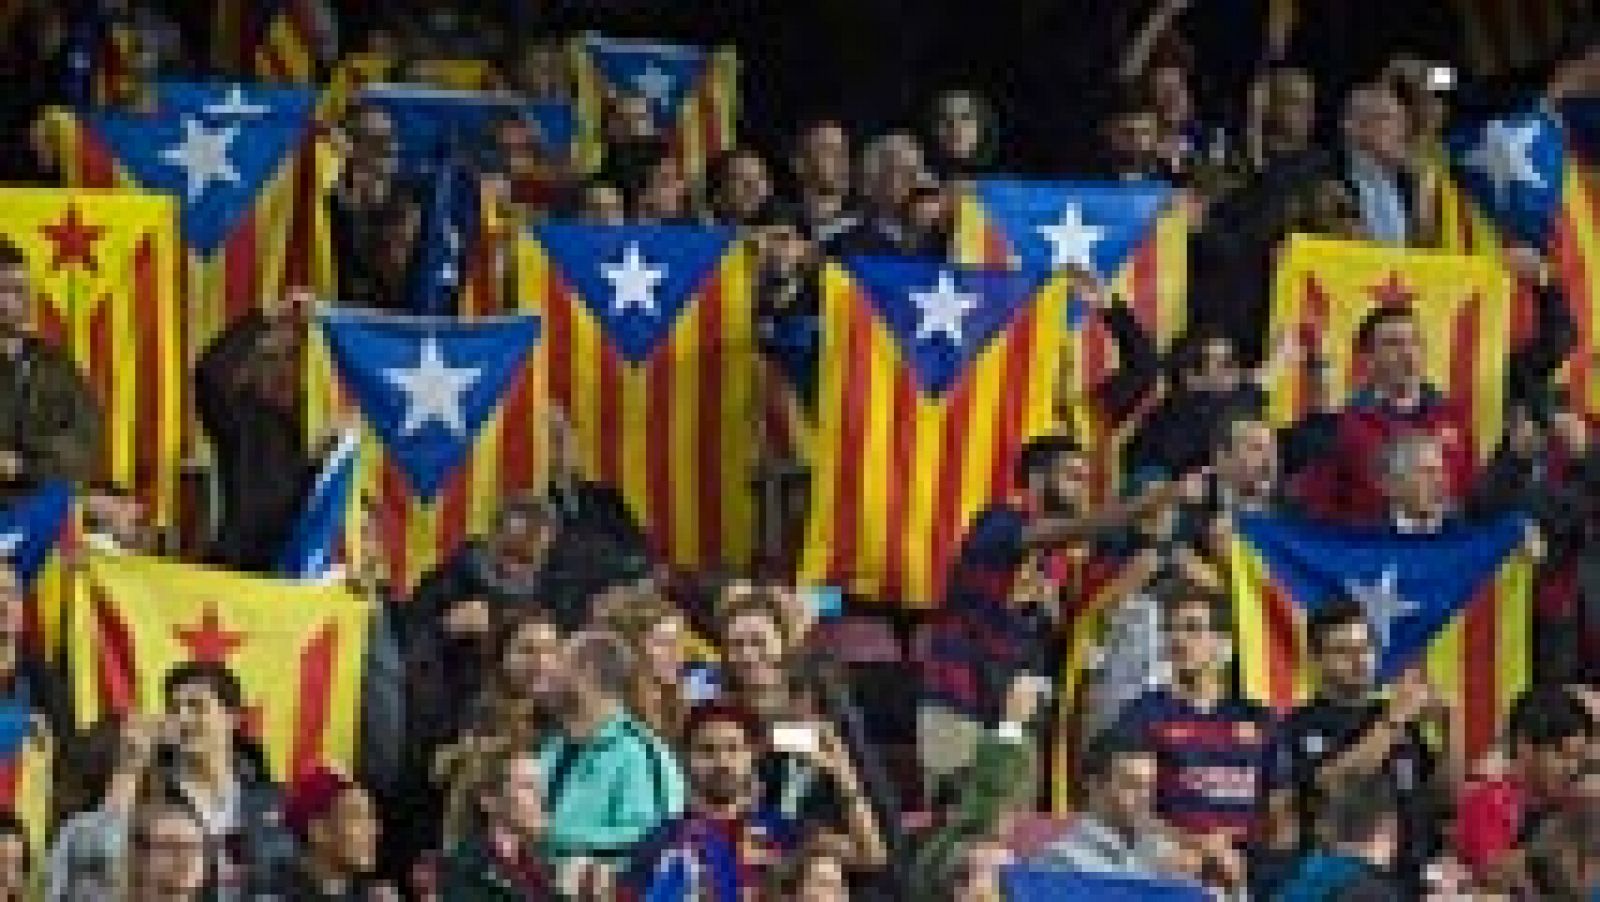 El FC Barcelona ha confirmado que la UEFA ha desestimado el recurso de apelación que presentó contra la sanción por la exhibición de esteladas y cánticos independentistas en el partido de la Liga de Campeones contra el Bayer Leverkusen jugado el pasado 29 de septiembre.